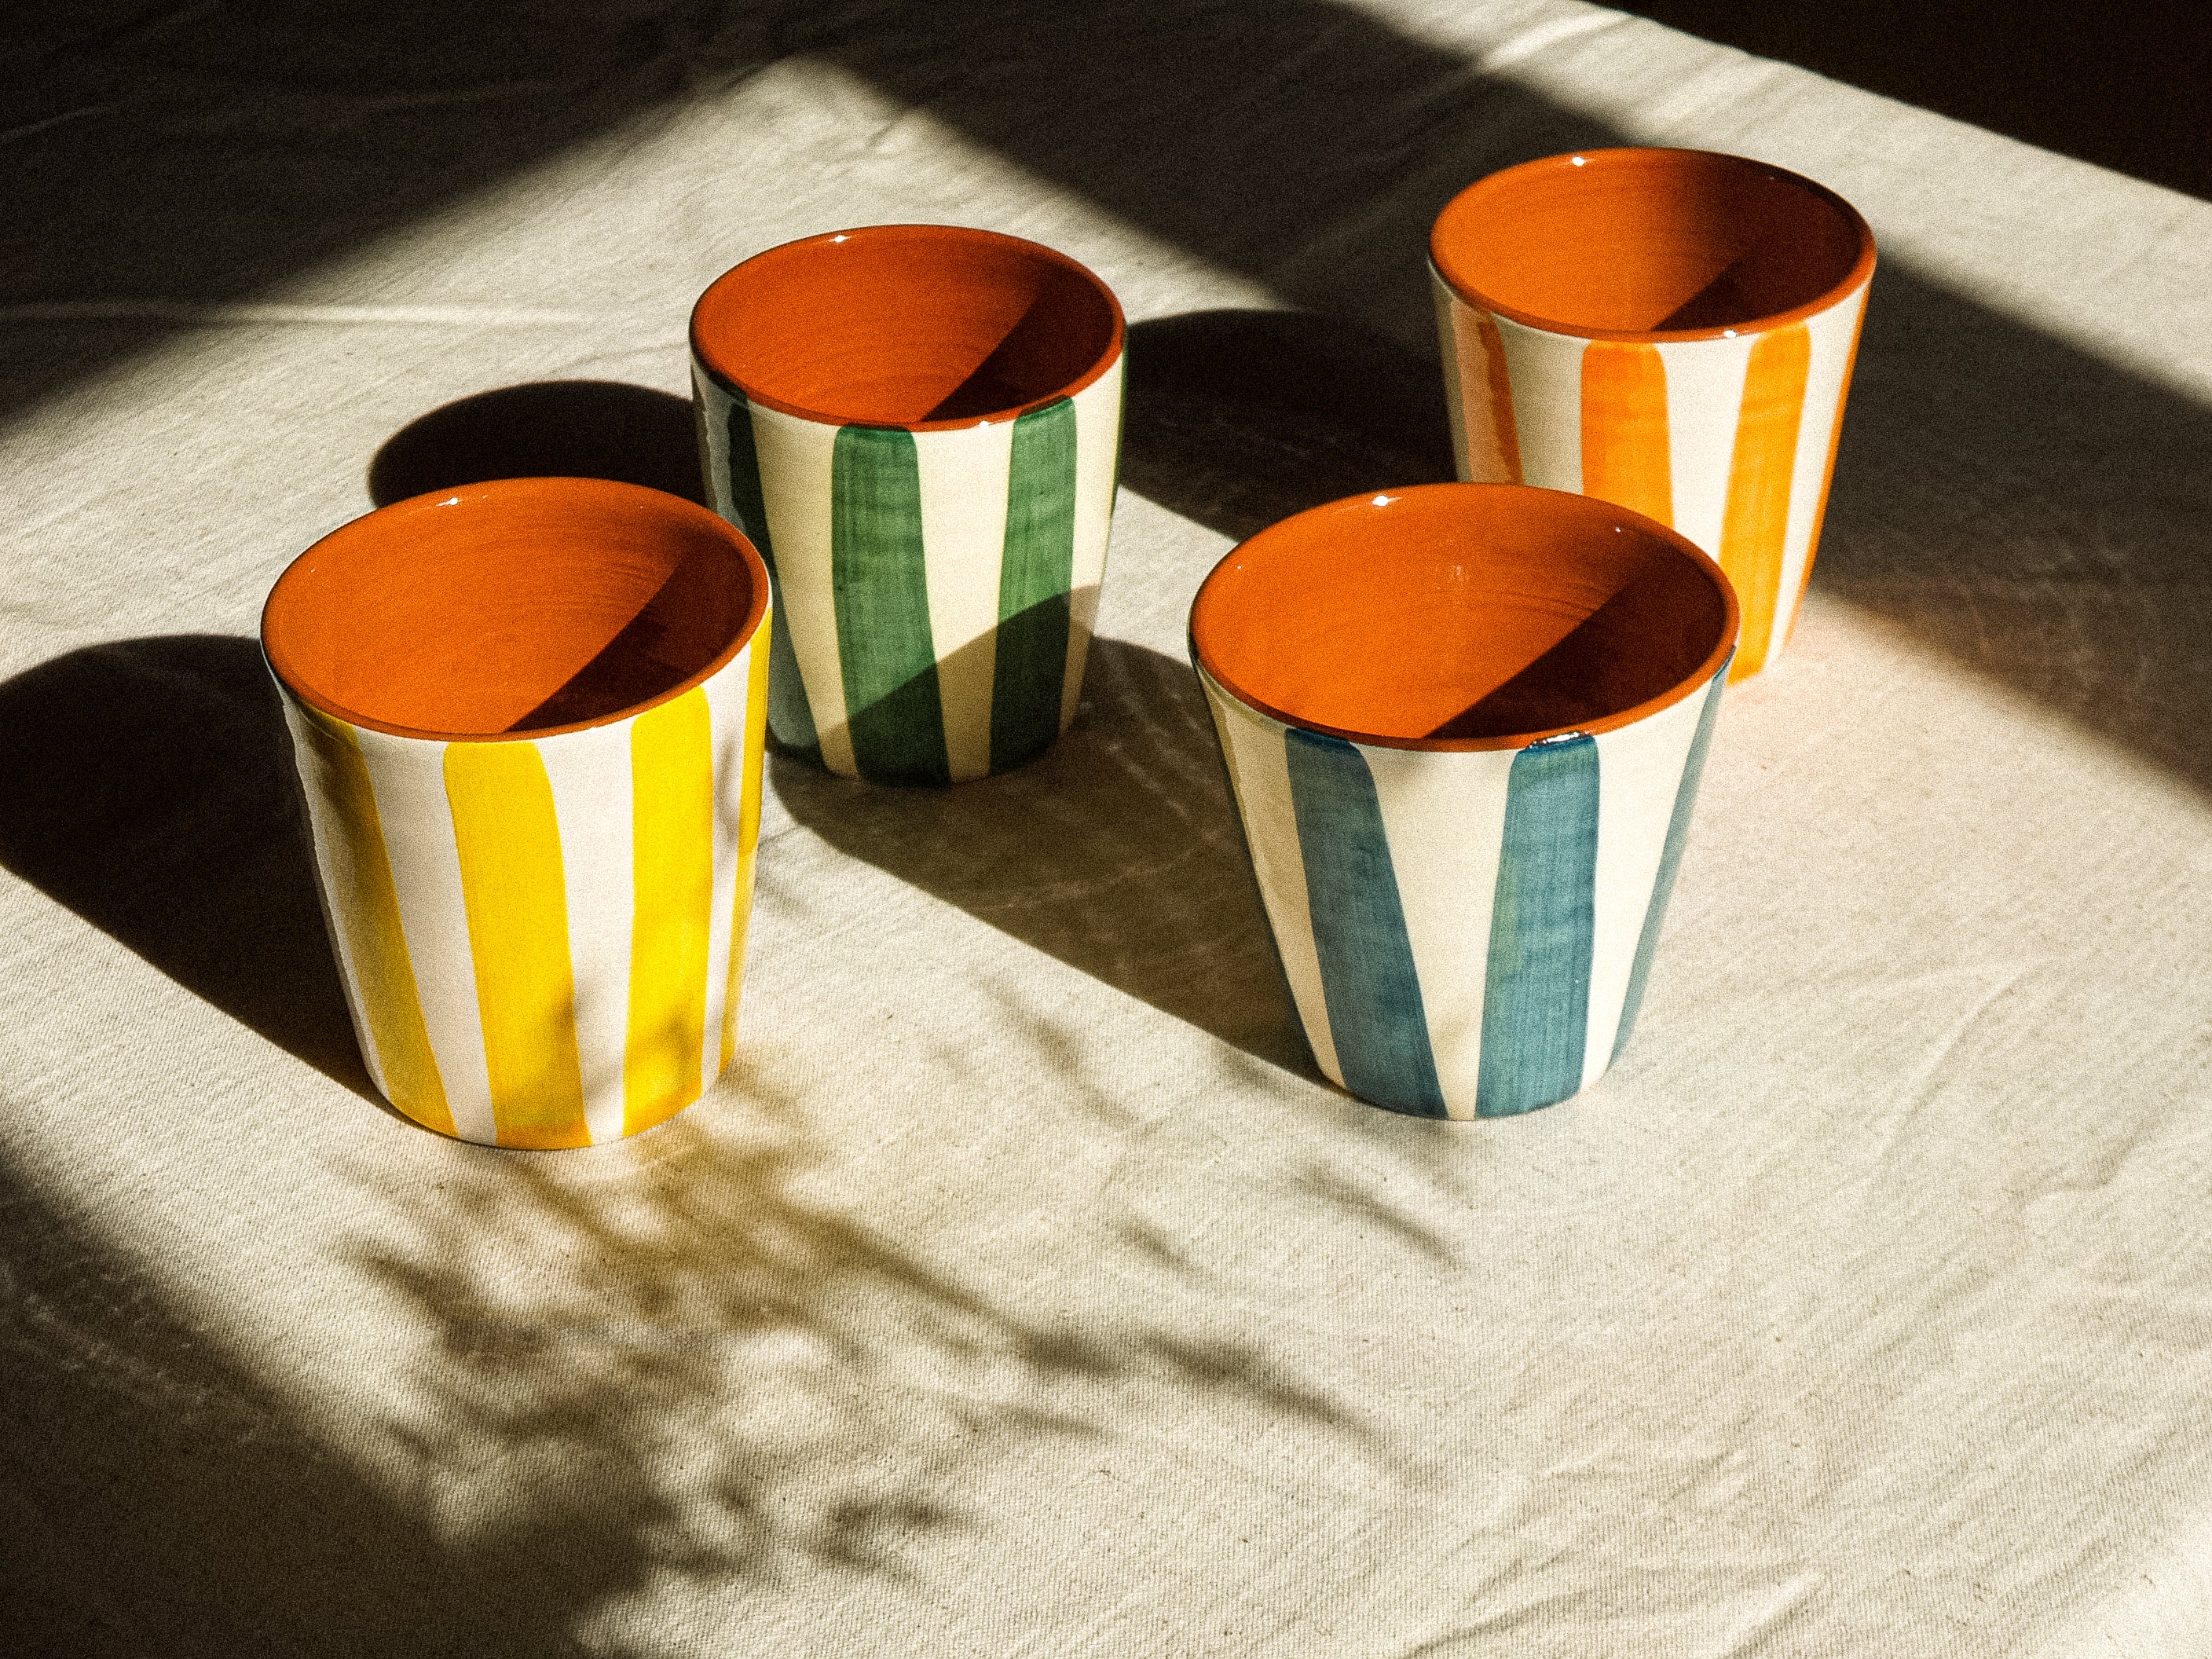 Grandes tasses sans anse en céramique, fabriquée et peinte à la main au Portugal. Blanches avec des rayures colorées, et intérieur terracotta.